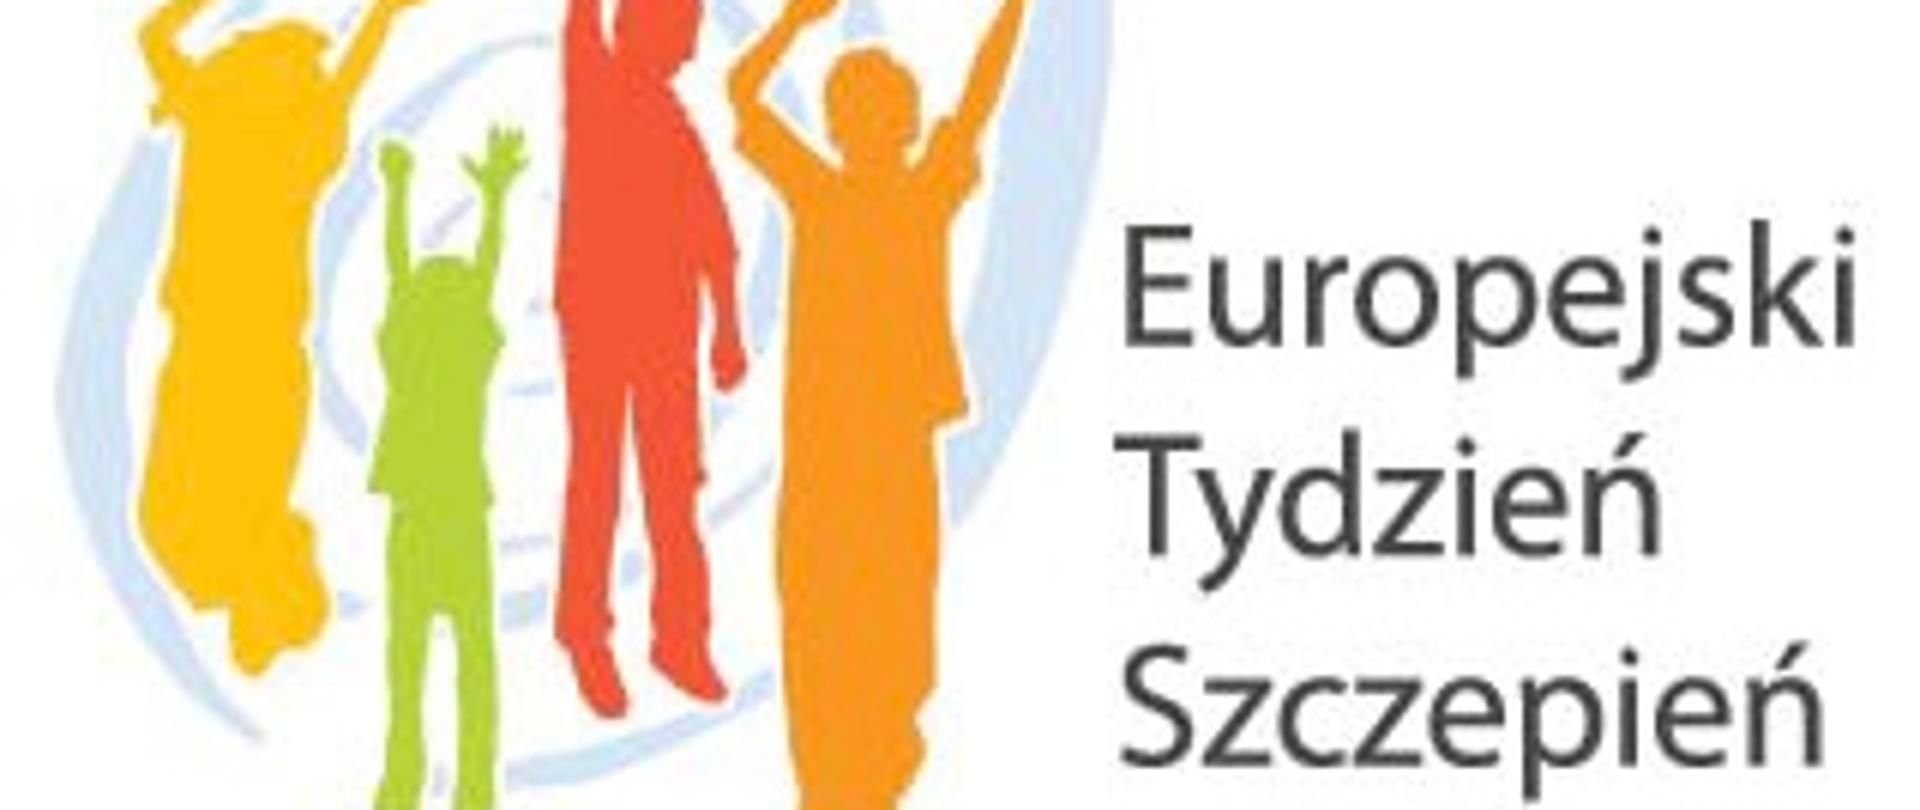 grafika przedstawiająca kolorowe cienie czterech postaci radosnych ludzi podskakujących z rękoma uniesionymi w górę i z napisem Europejski Tydzień Szczepień.